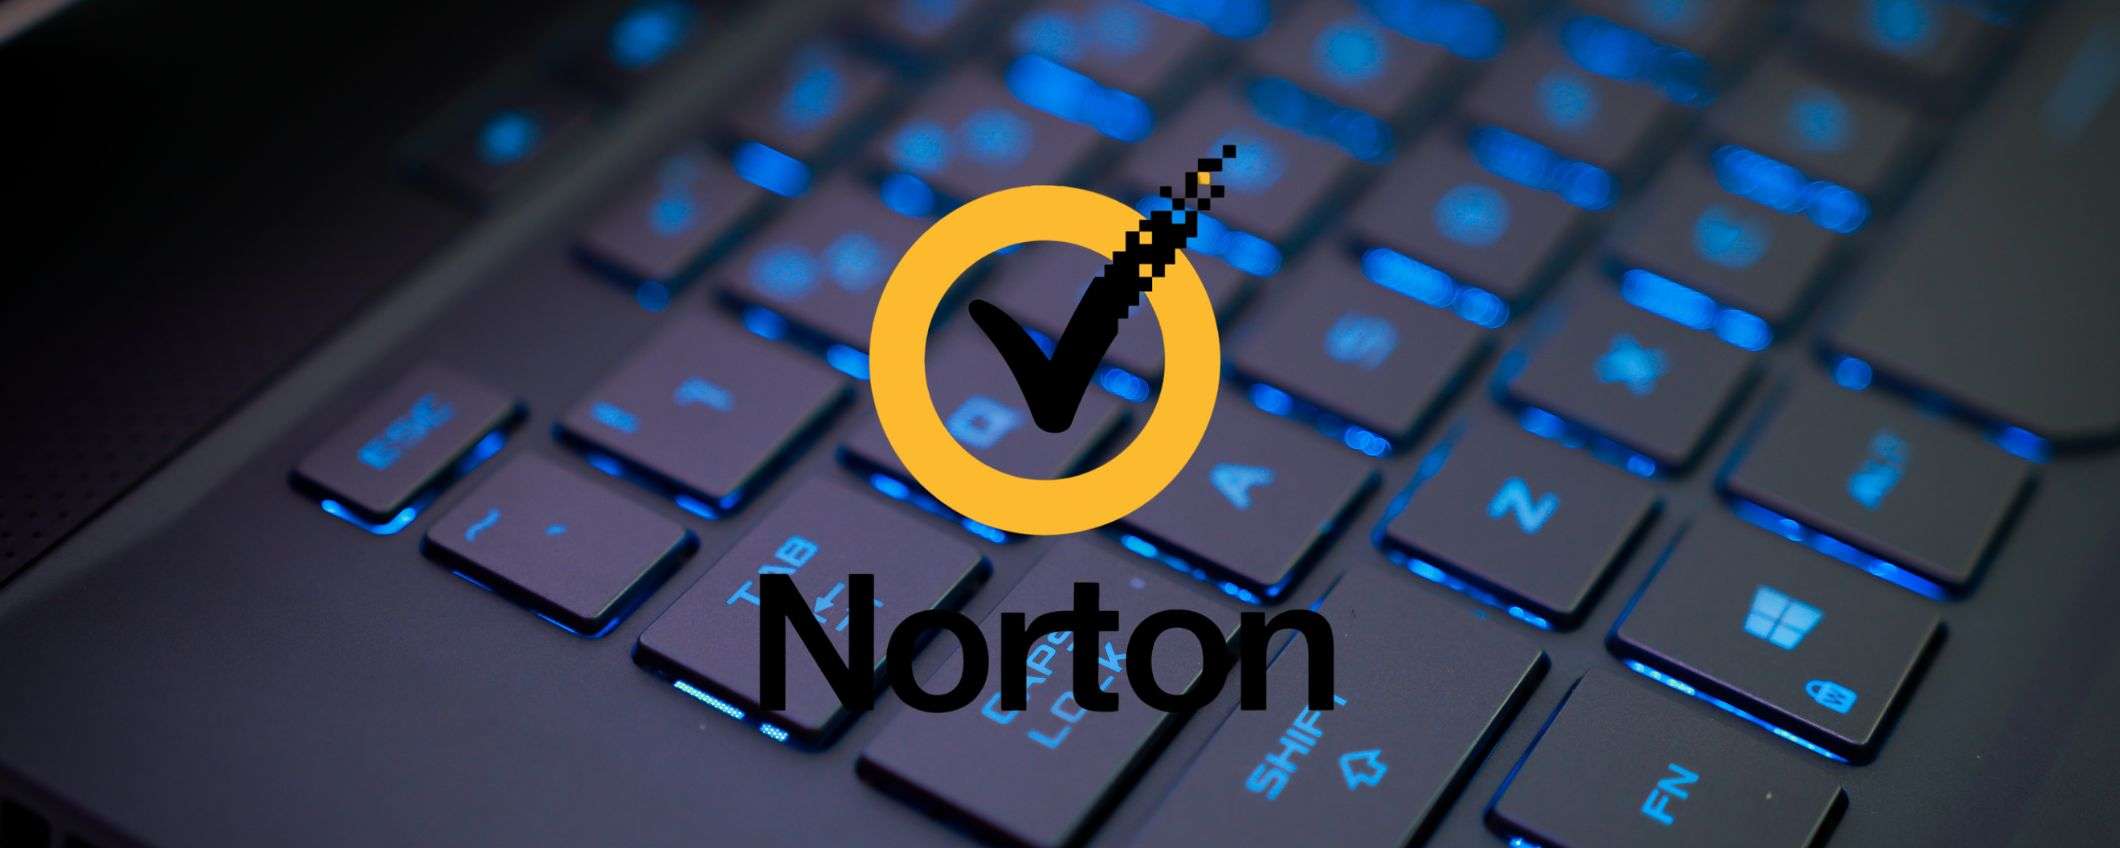 Norton, abbonati subito: per te antivirus e VPN a prezzo stracciato